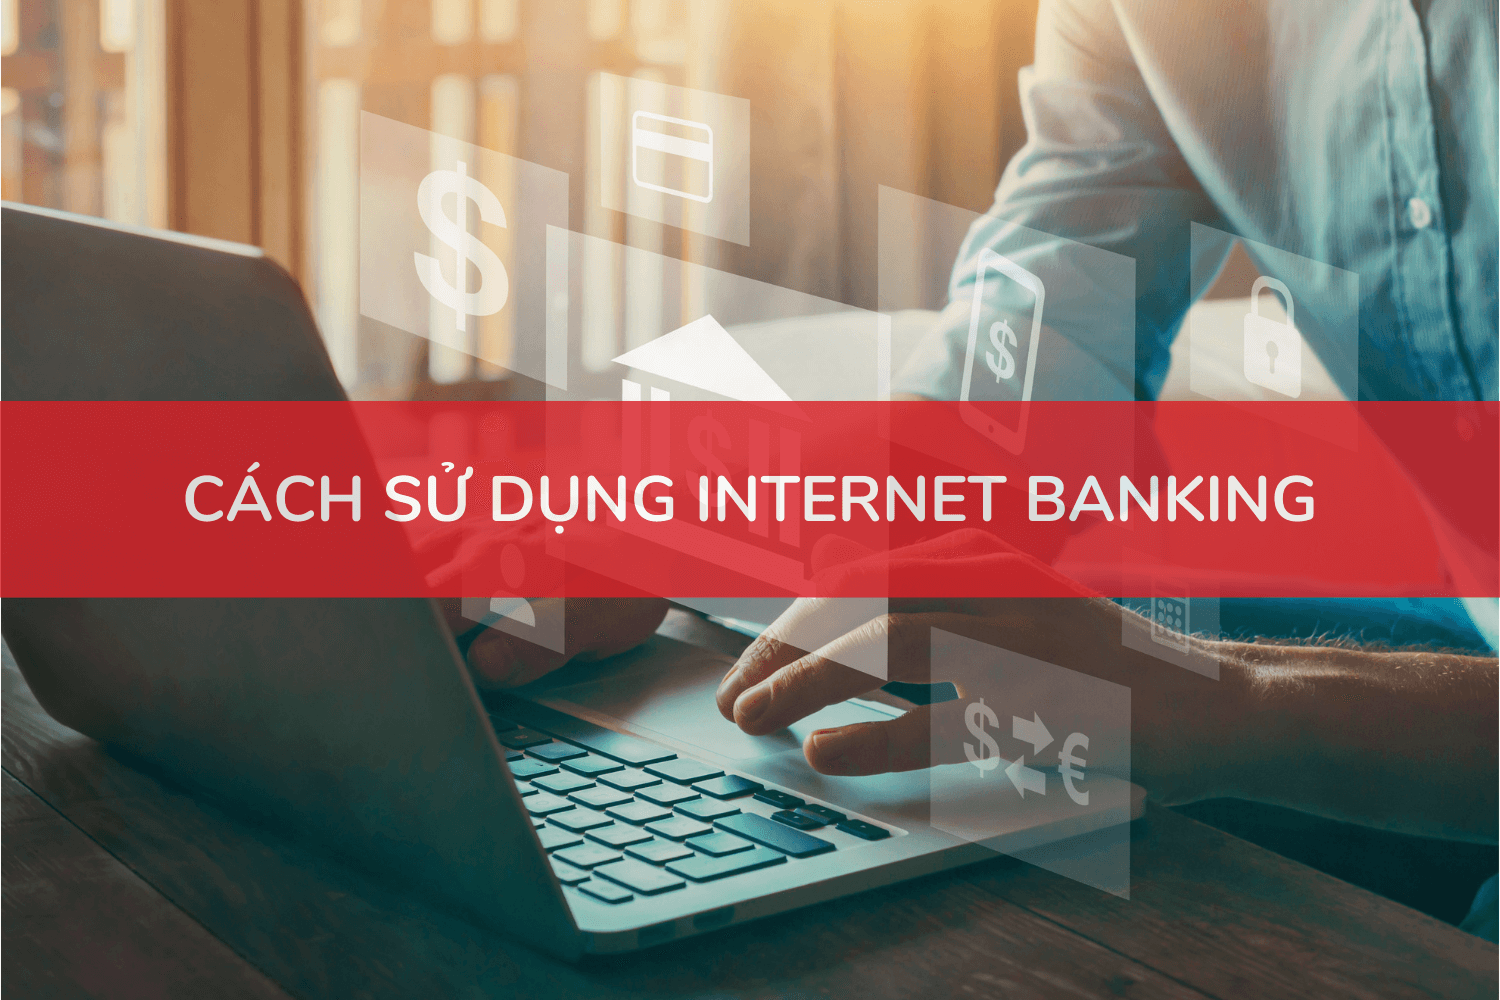 Làm thế nào để đăng ký Internet banking trên thẻ ATM của ngân hàng?
